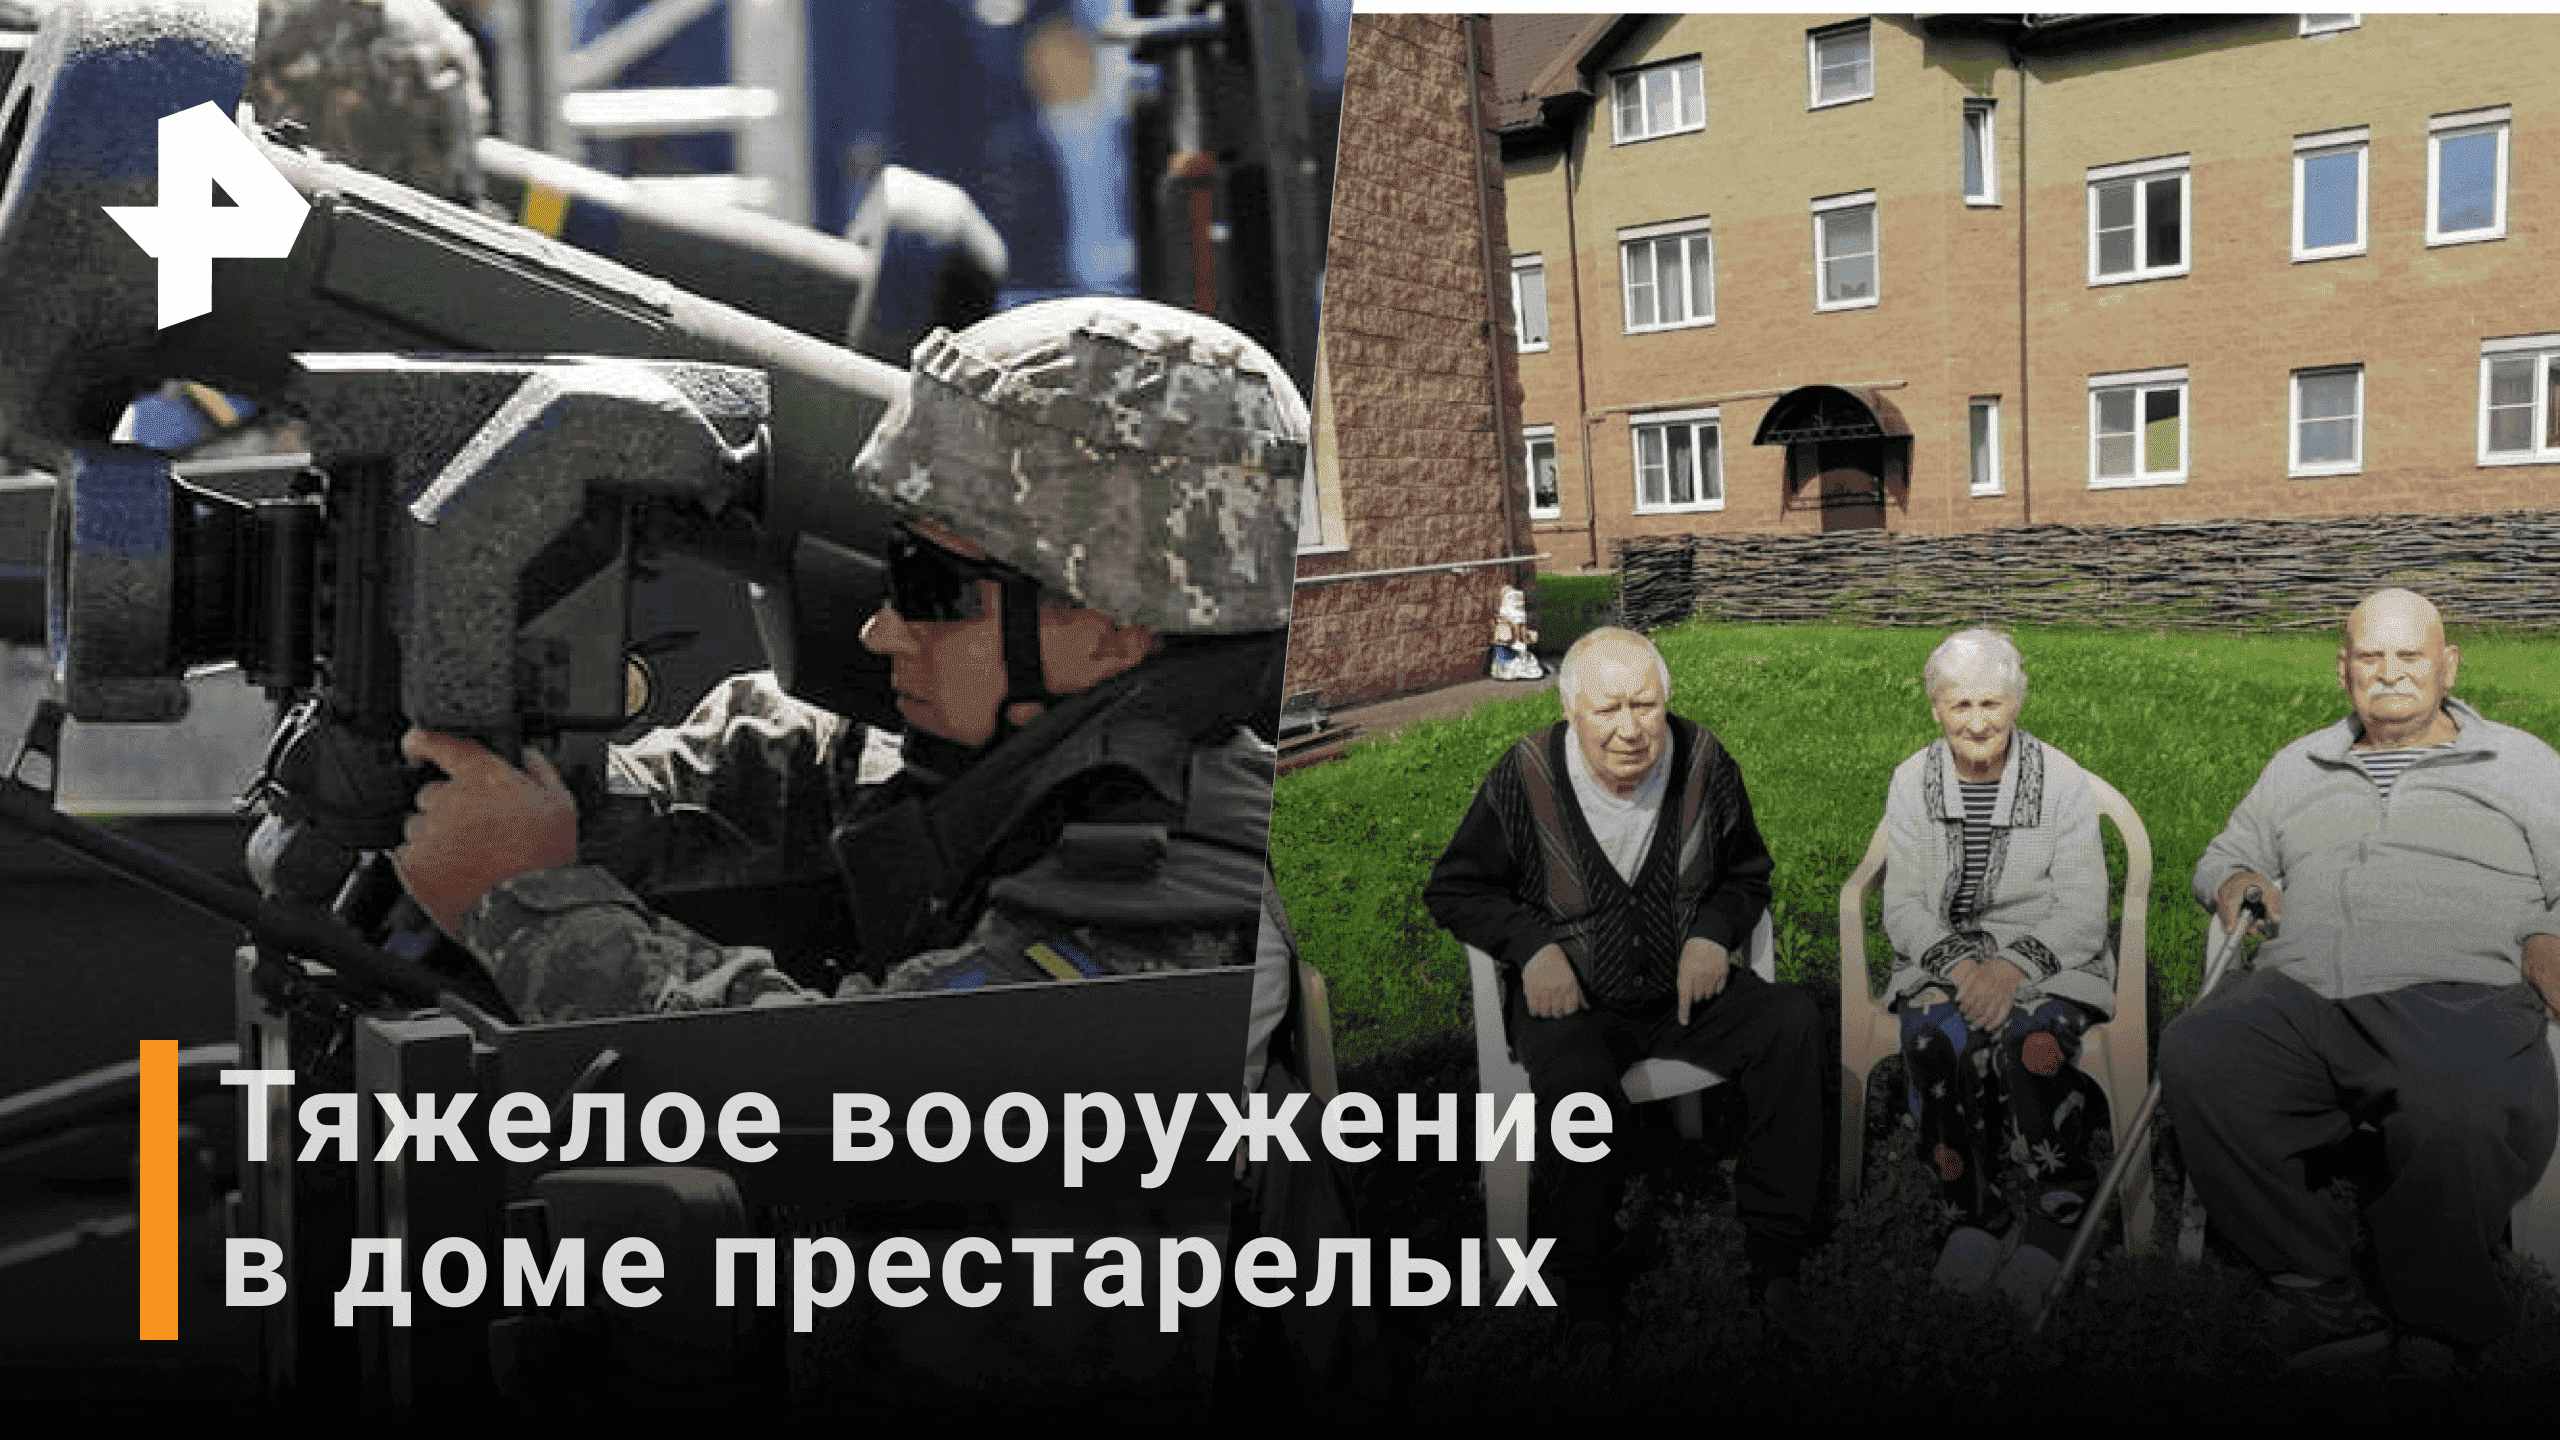 Украинские националисты разместили вооружение в доме престарелых  / Новости РЕН